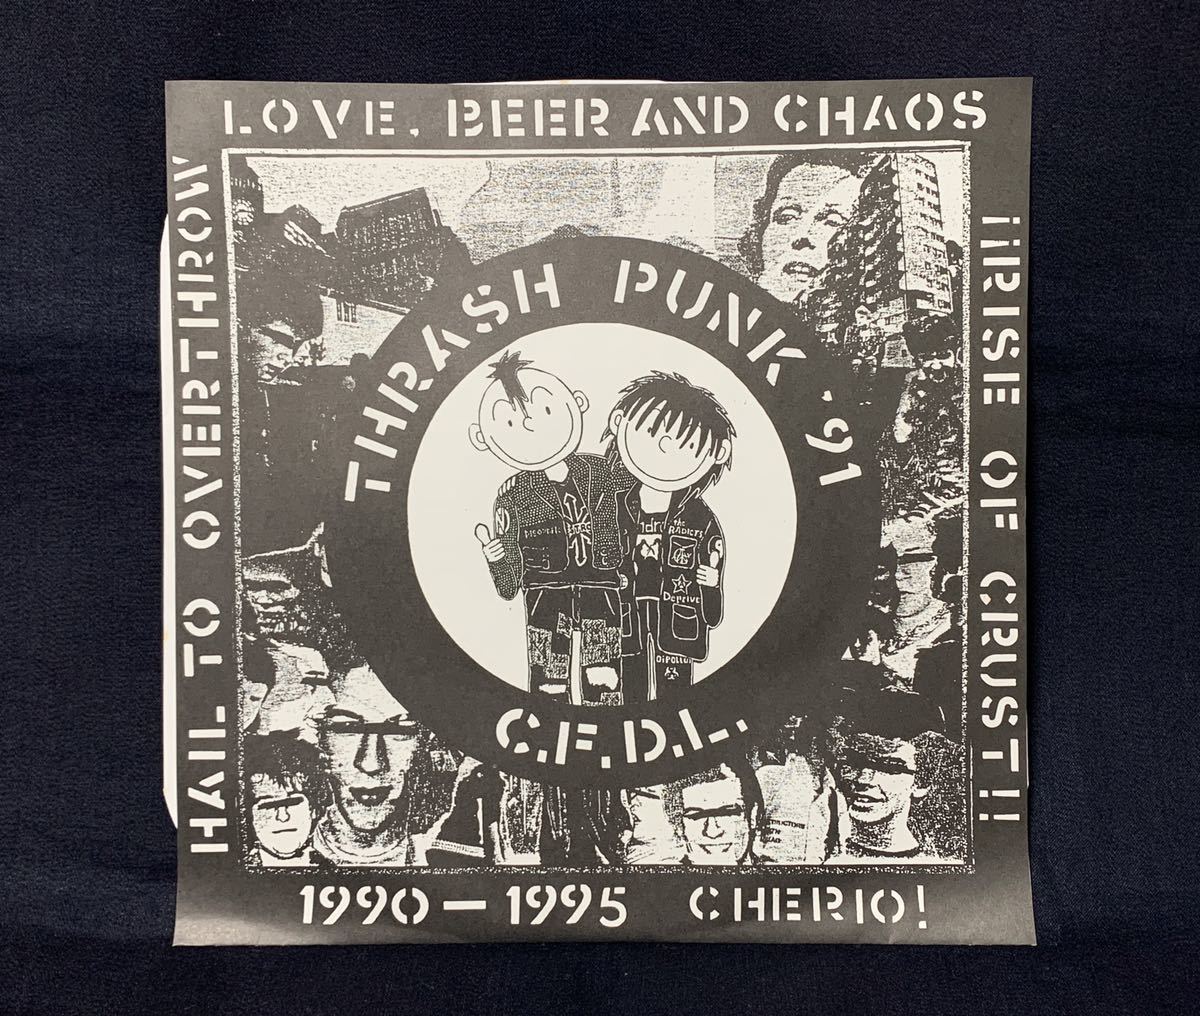 激レア C.F.D.L. THRASH PUNK '91 LP イエローマーブル盤 限定版 Overthrow Records 1996 CRUST ハードコア パンク 名古屋 レコード 委託品の画像1